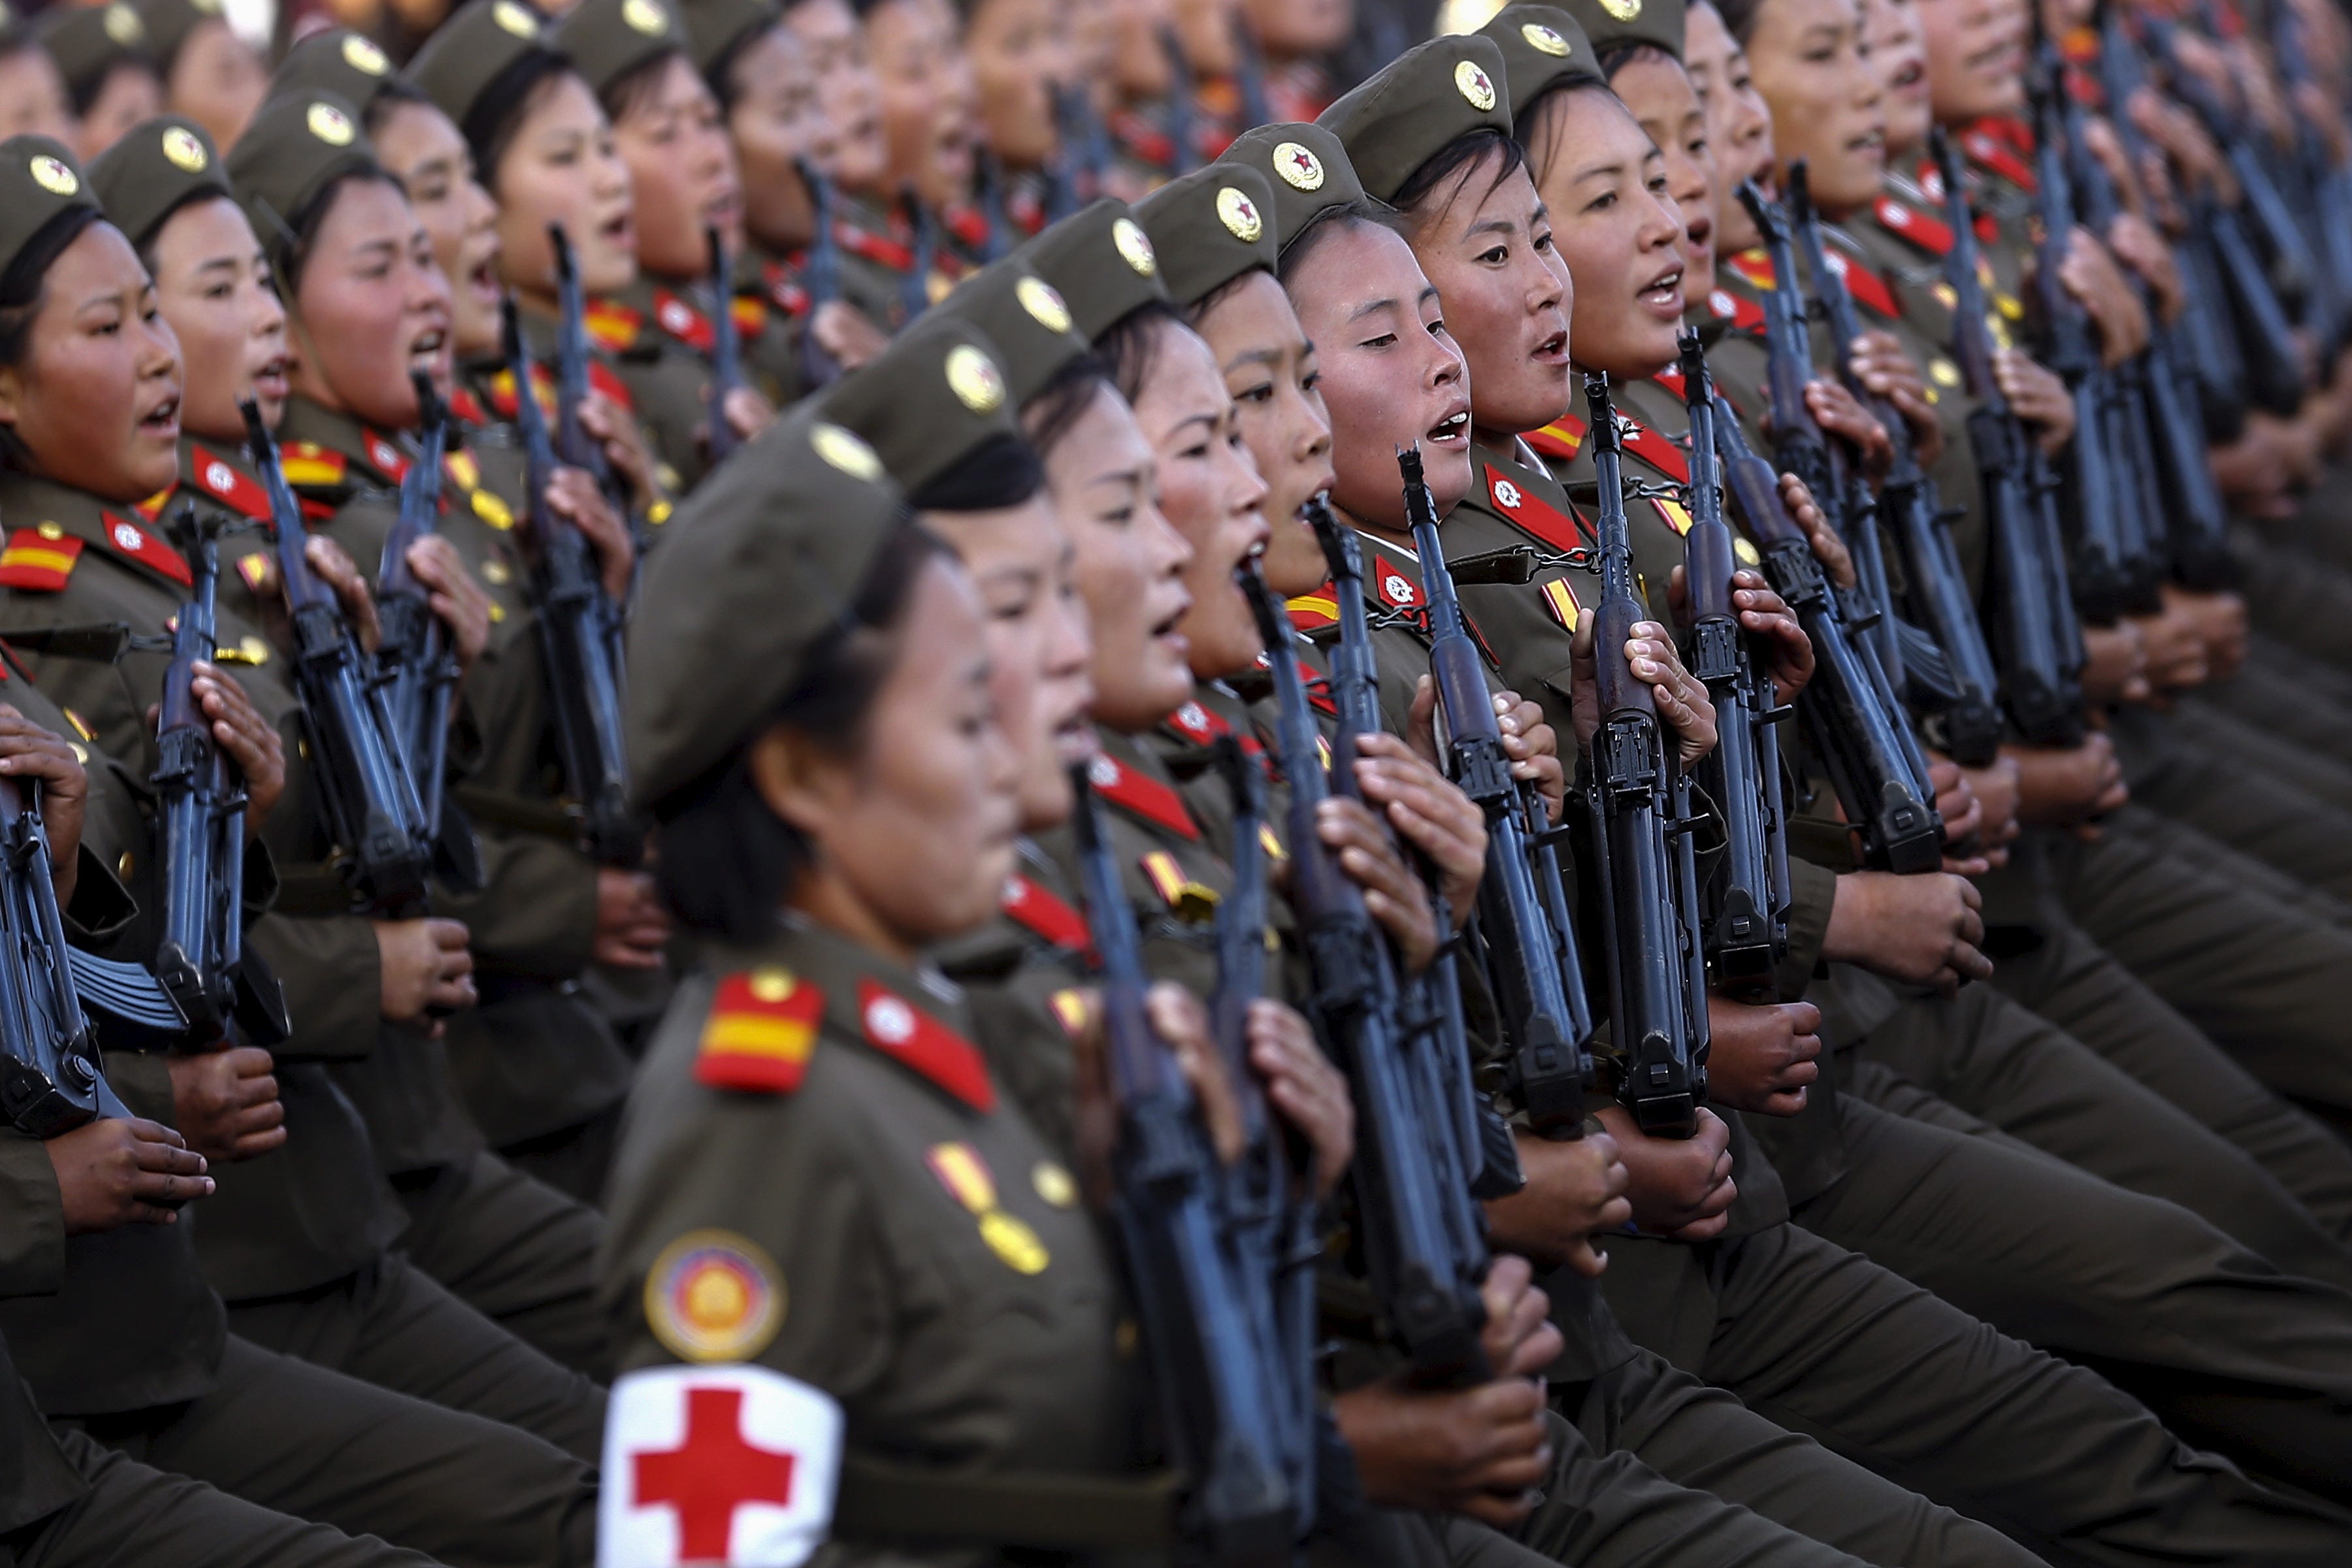 Nordkoreanische Militärsoldaten versammelten sich zu einer offiziellen Veranstaltung.